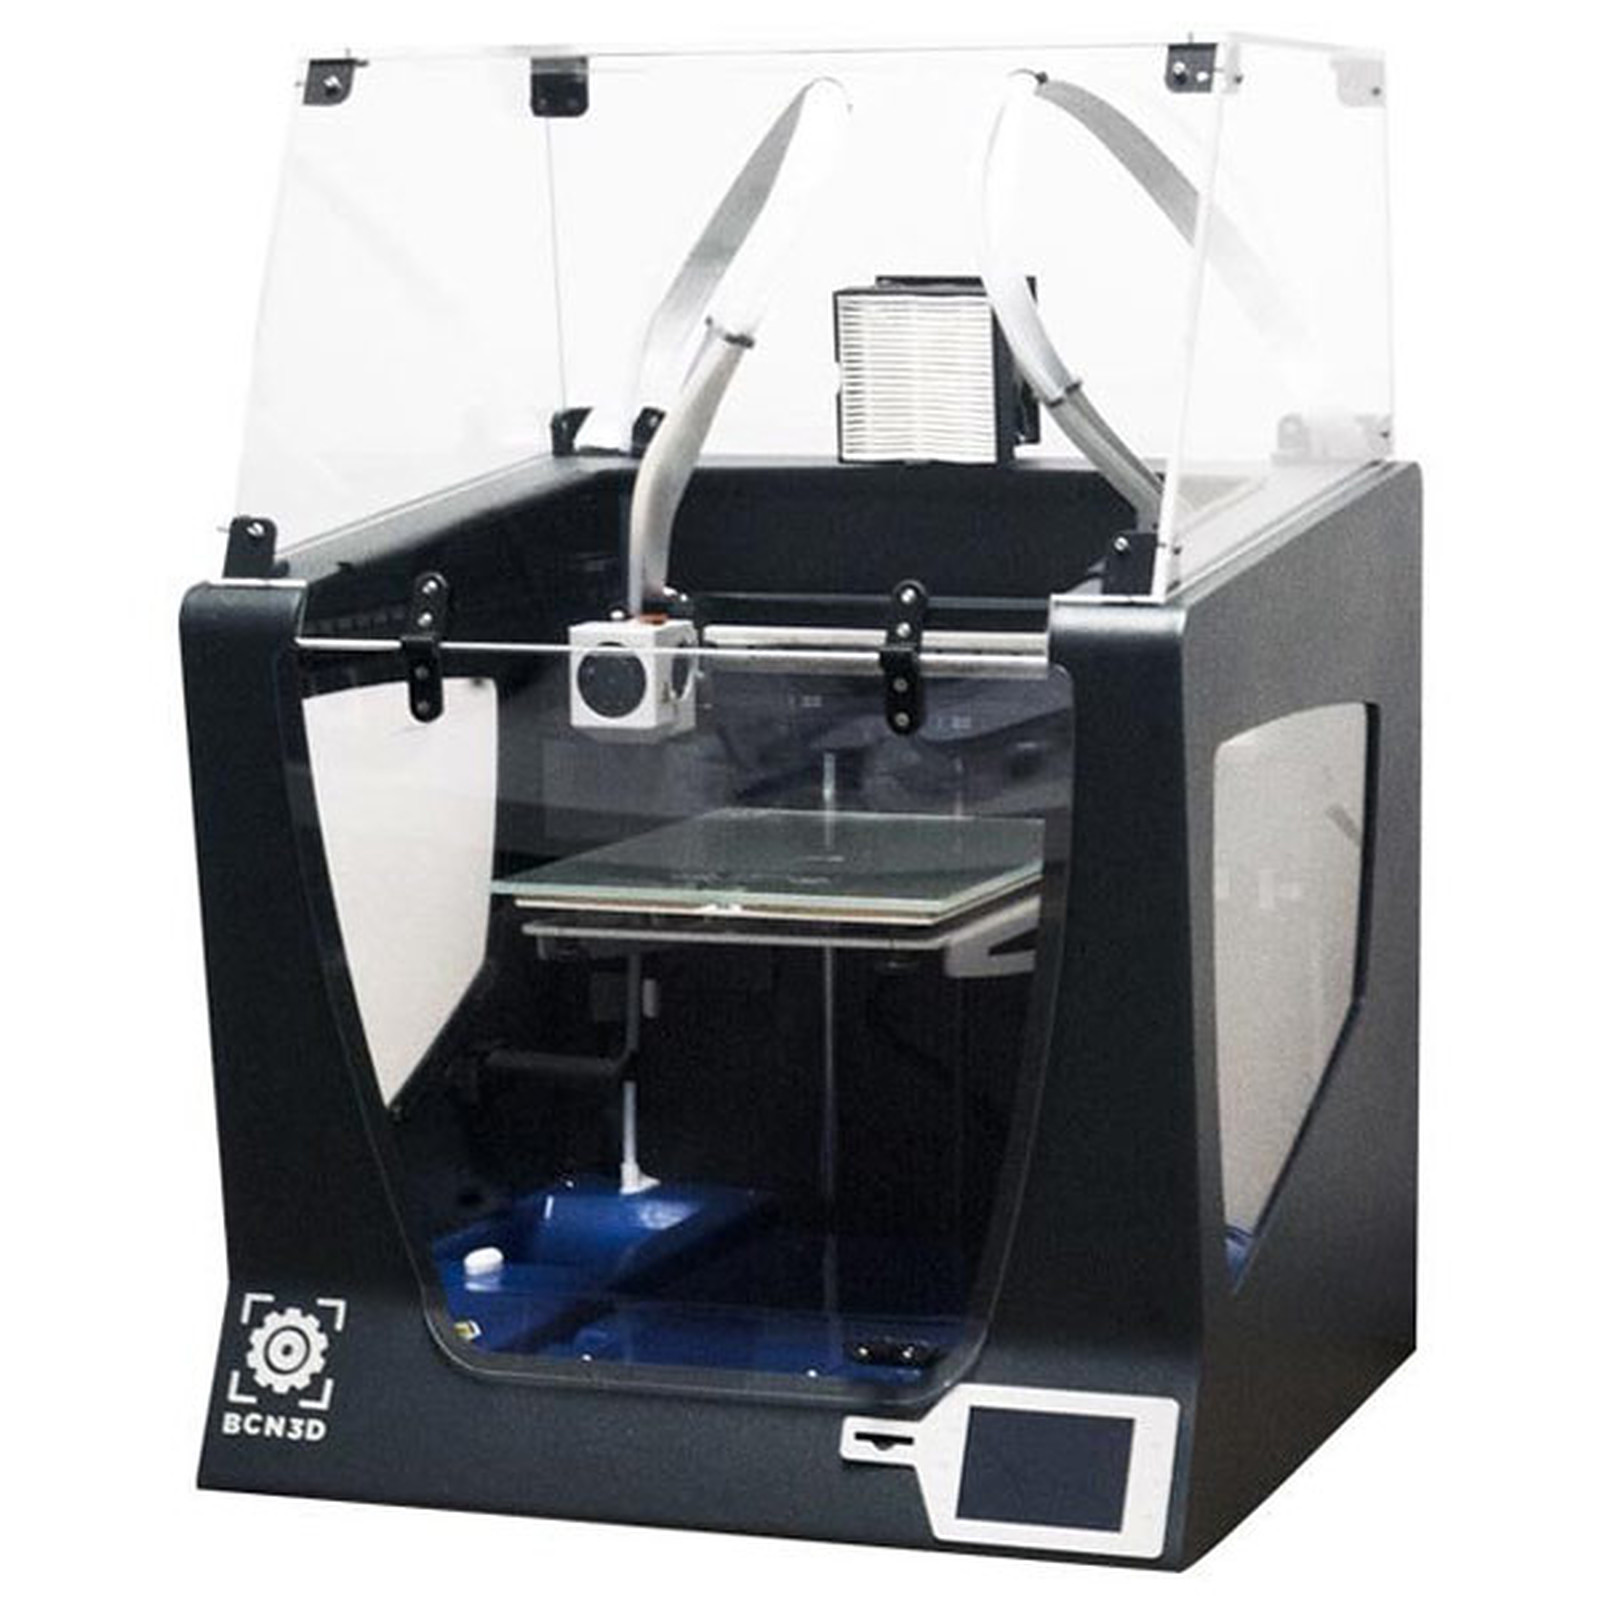 BCN3D Capot Sigma - Accessoires imprimante 3D BCN3D Technologies